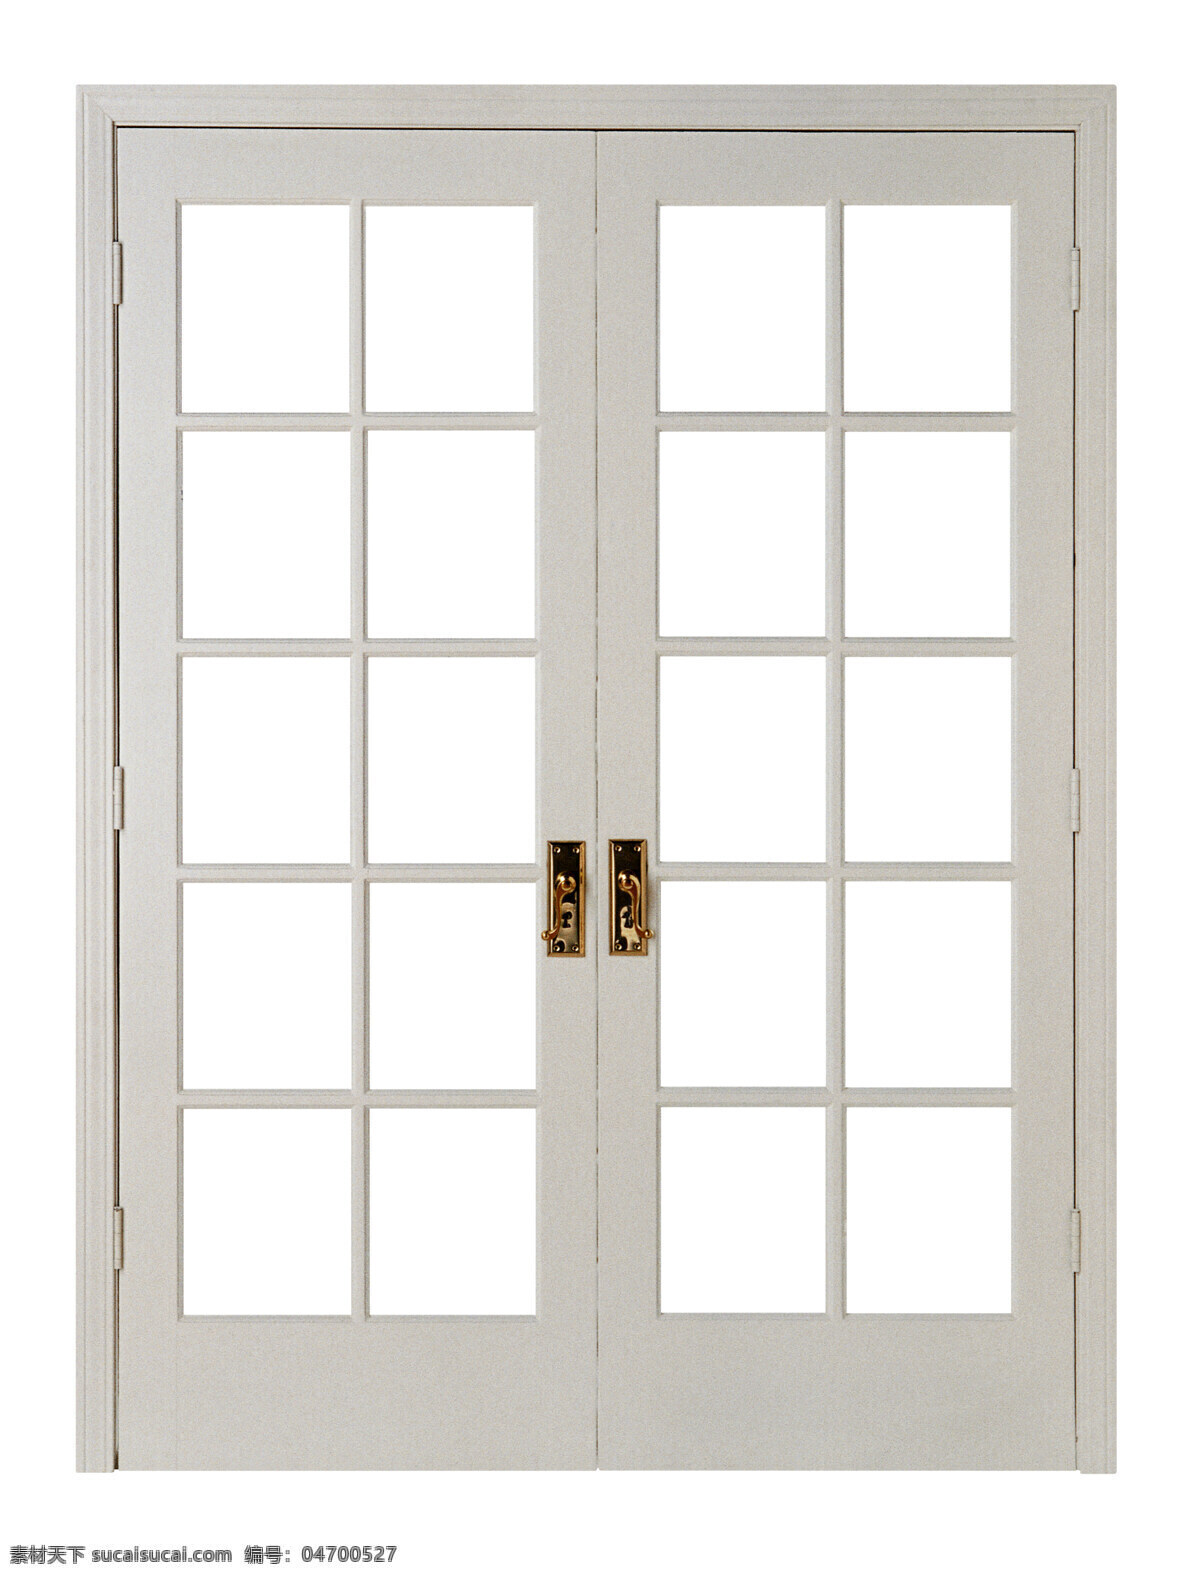 木门 铁门 不锈钢门 木窗 铁窗 生活百科 生活素材 摄影图库